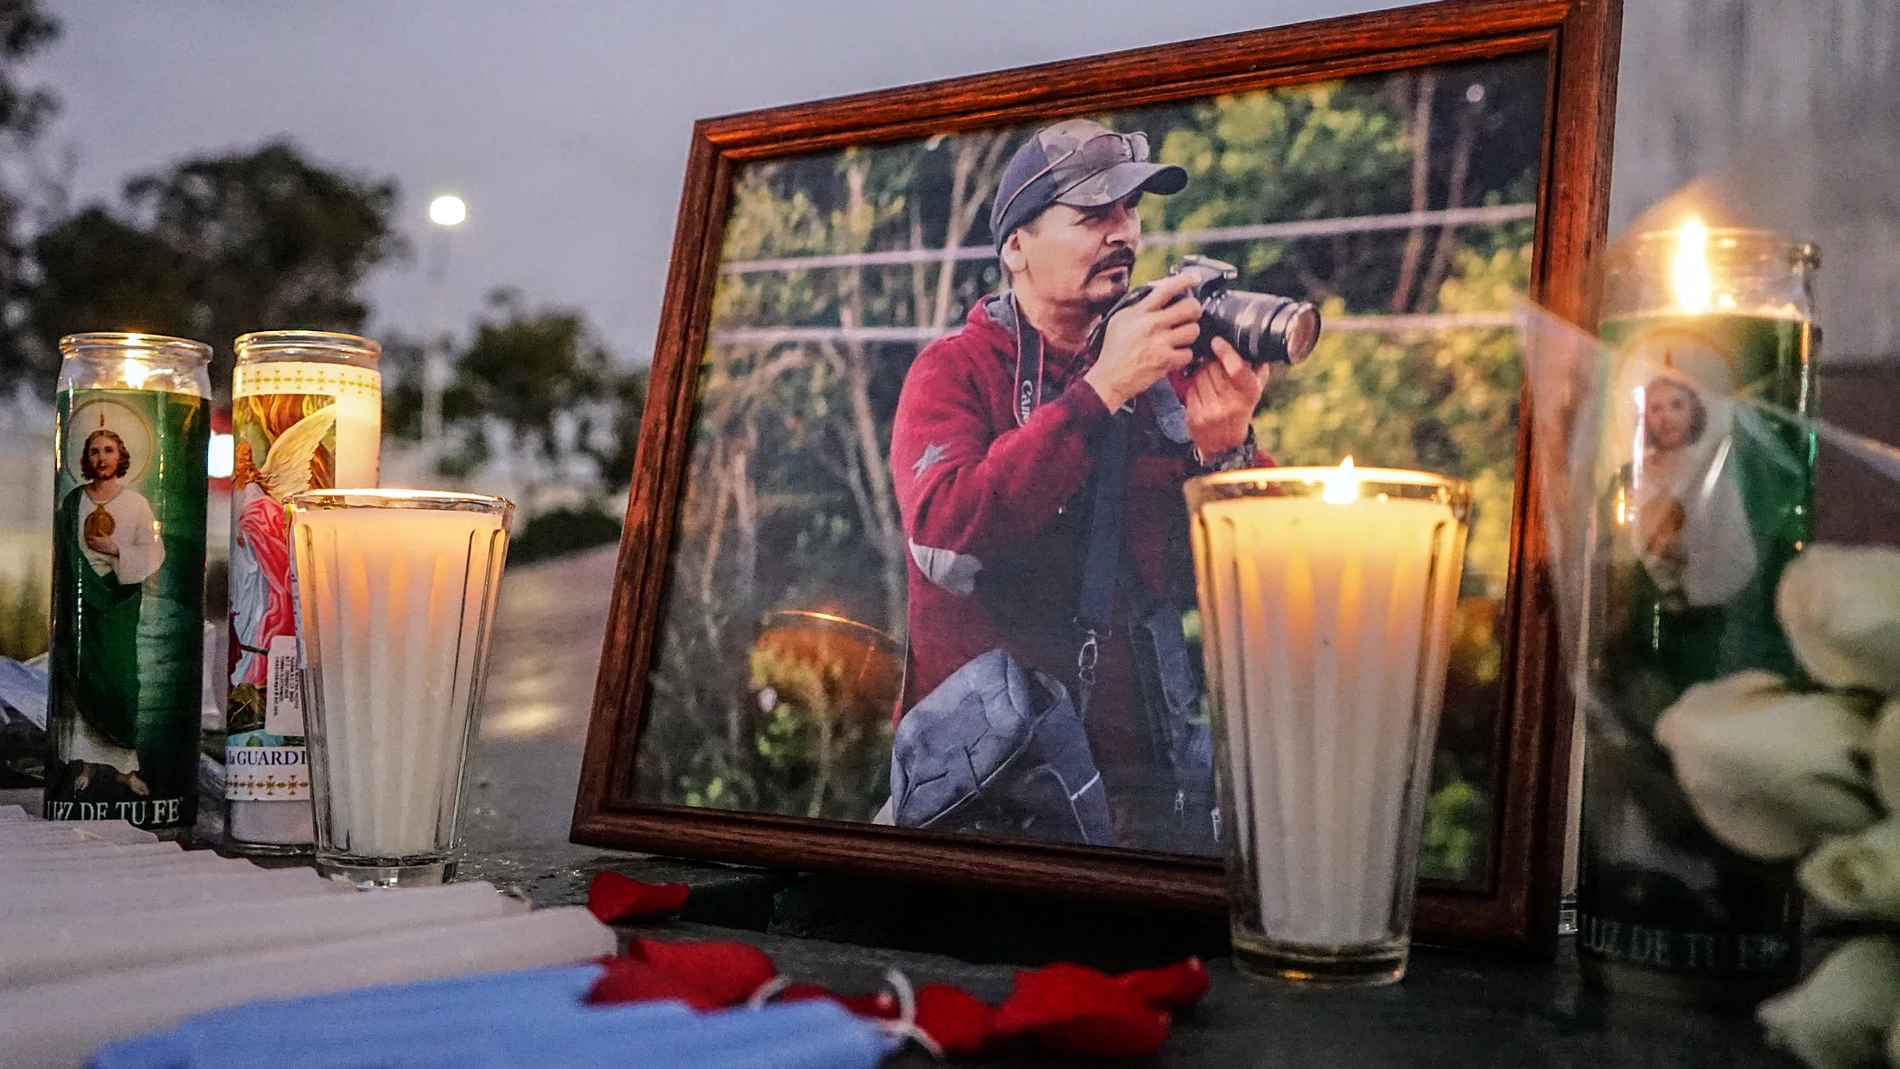 Altar en memoria del periodista asesinado Margarito Martínez, en Tijuana (México), atribuido al narco David López Jiménez, alias “El Cabo 20”